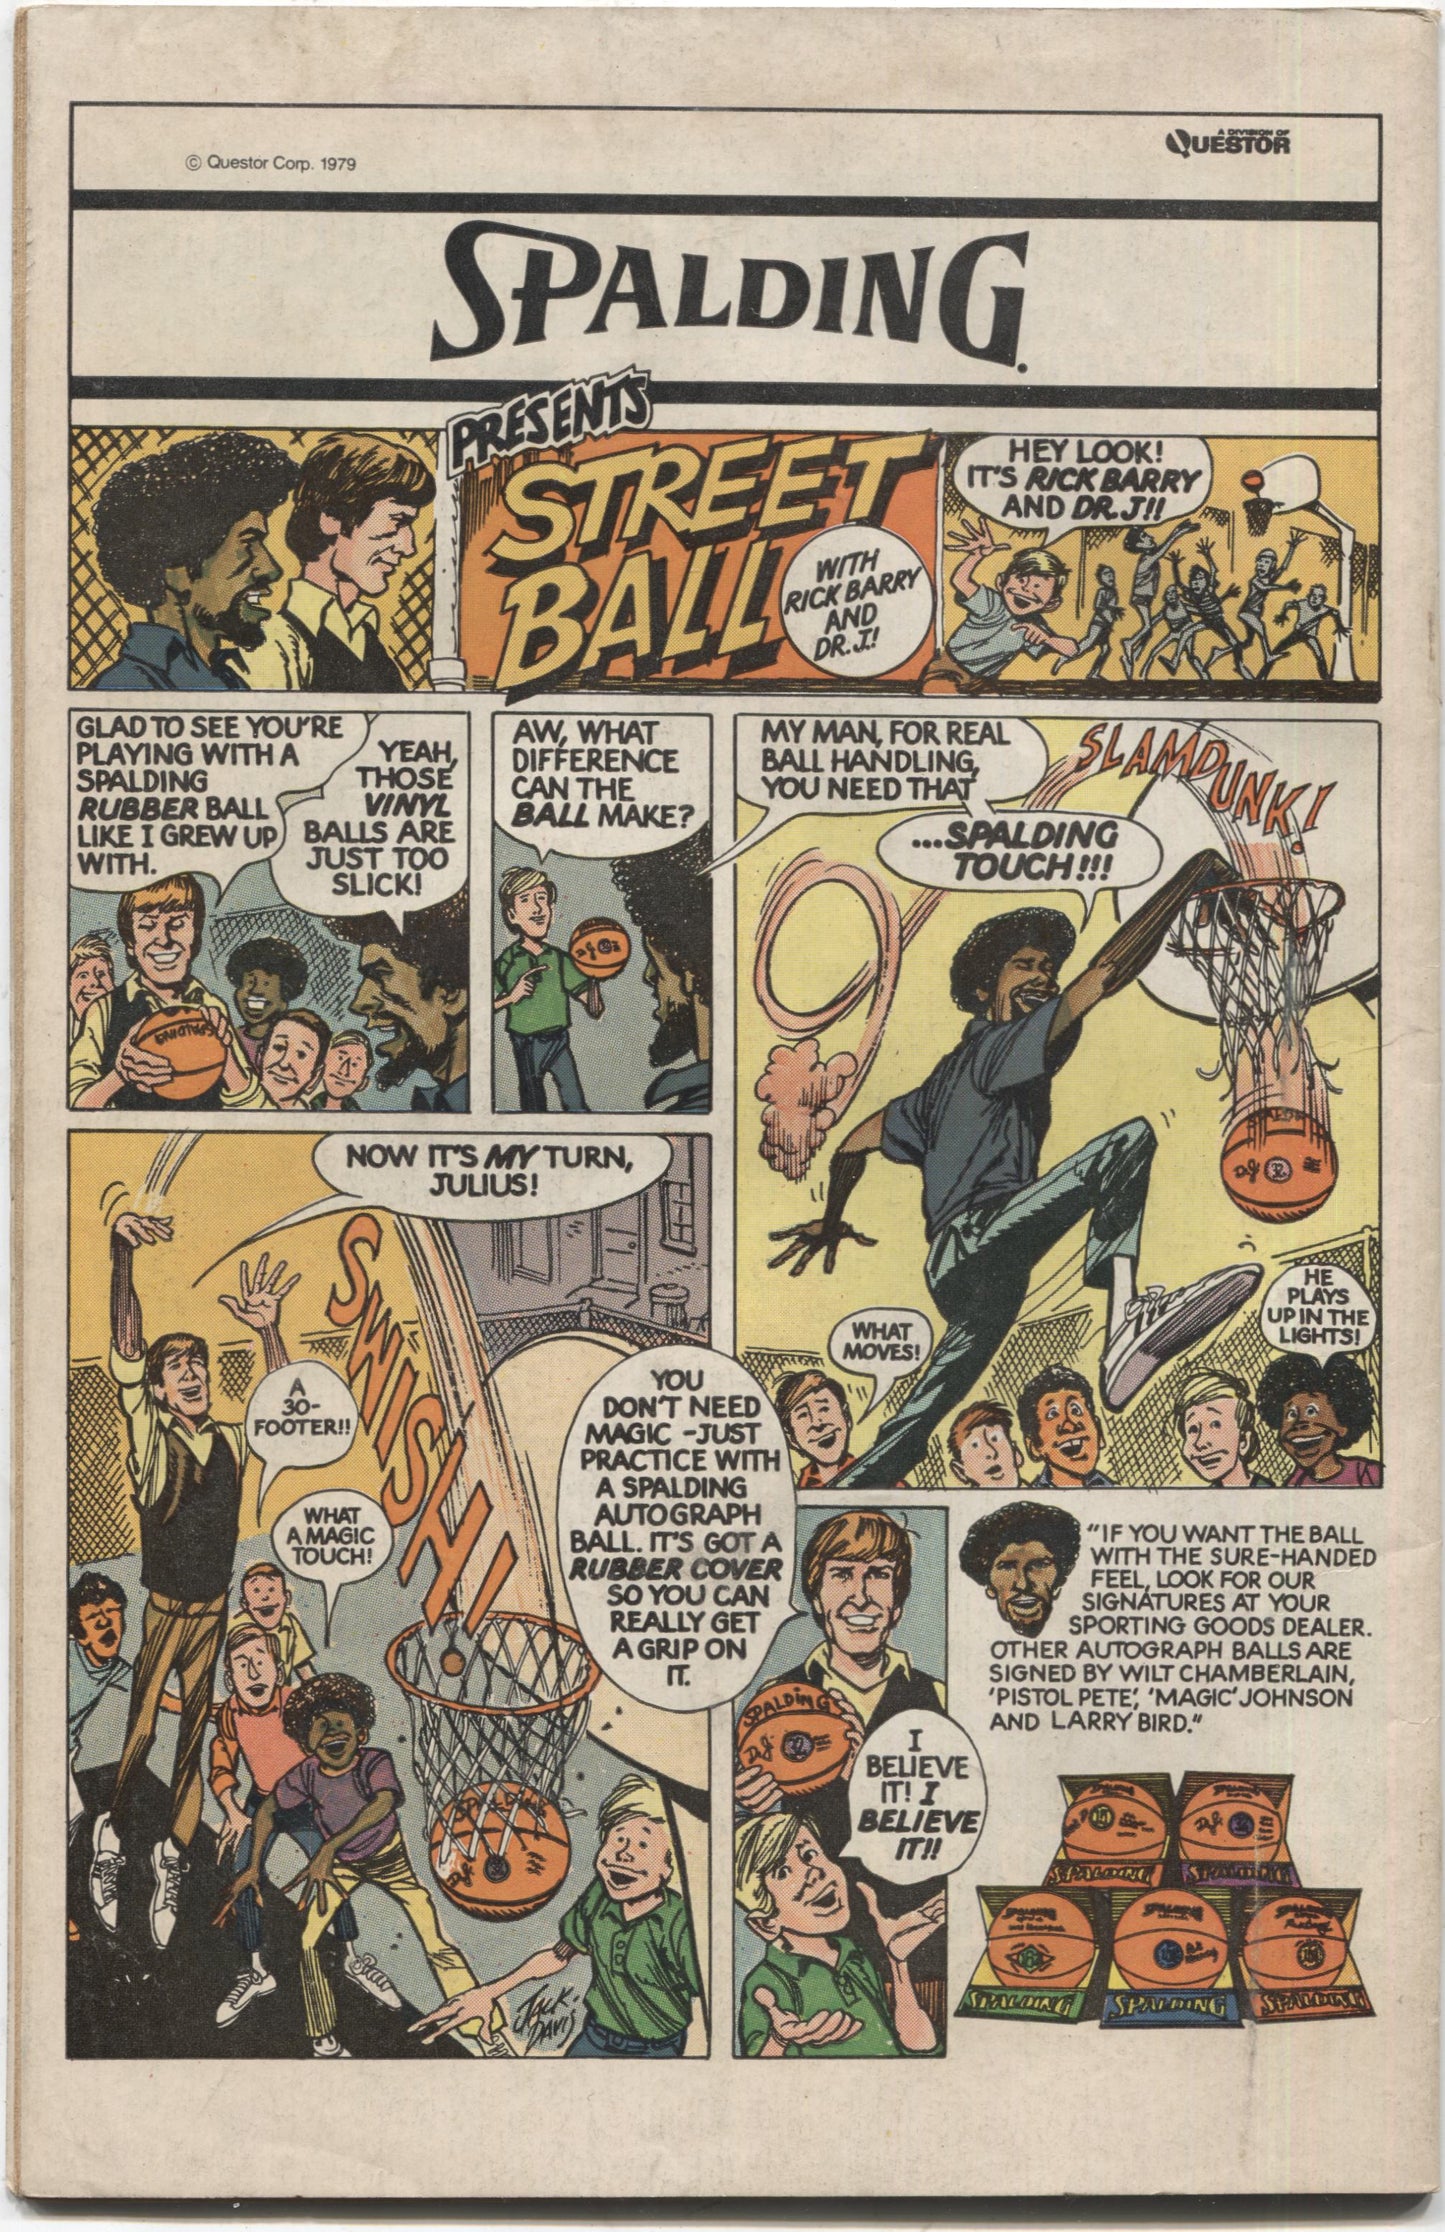 Ghosts No. 89, DC Comics, June 1980